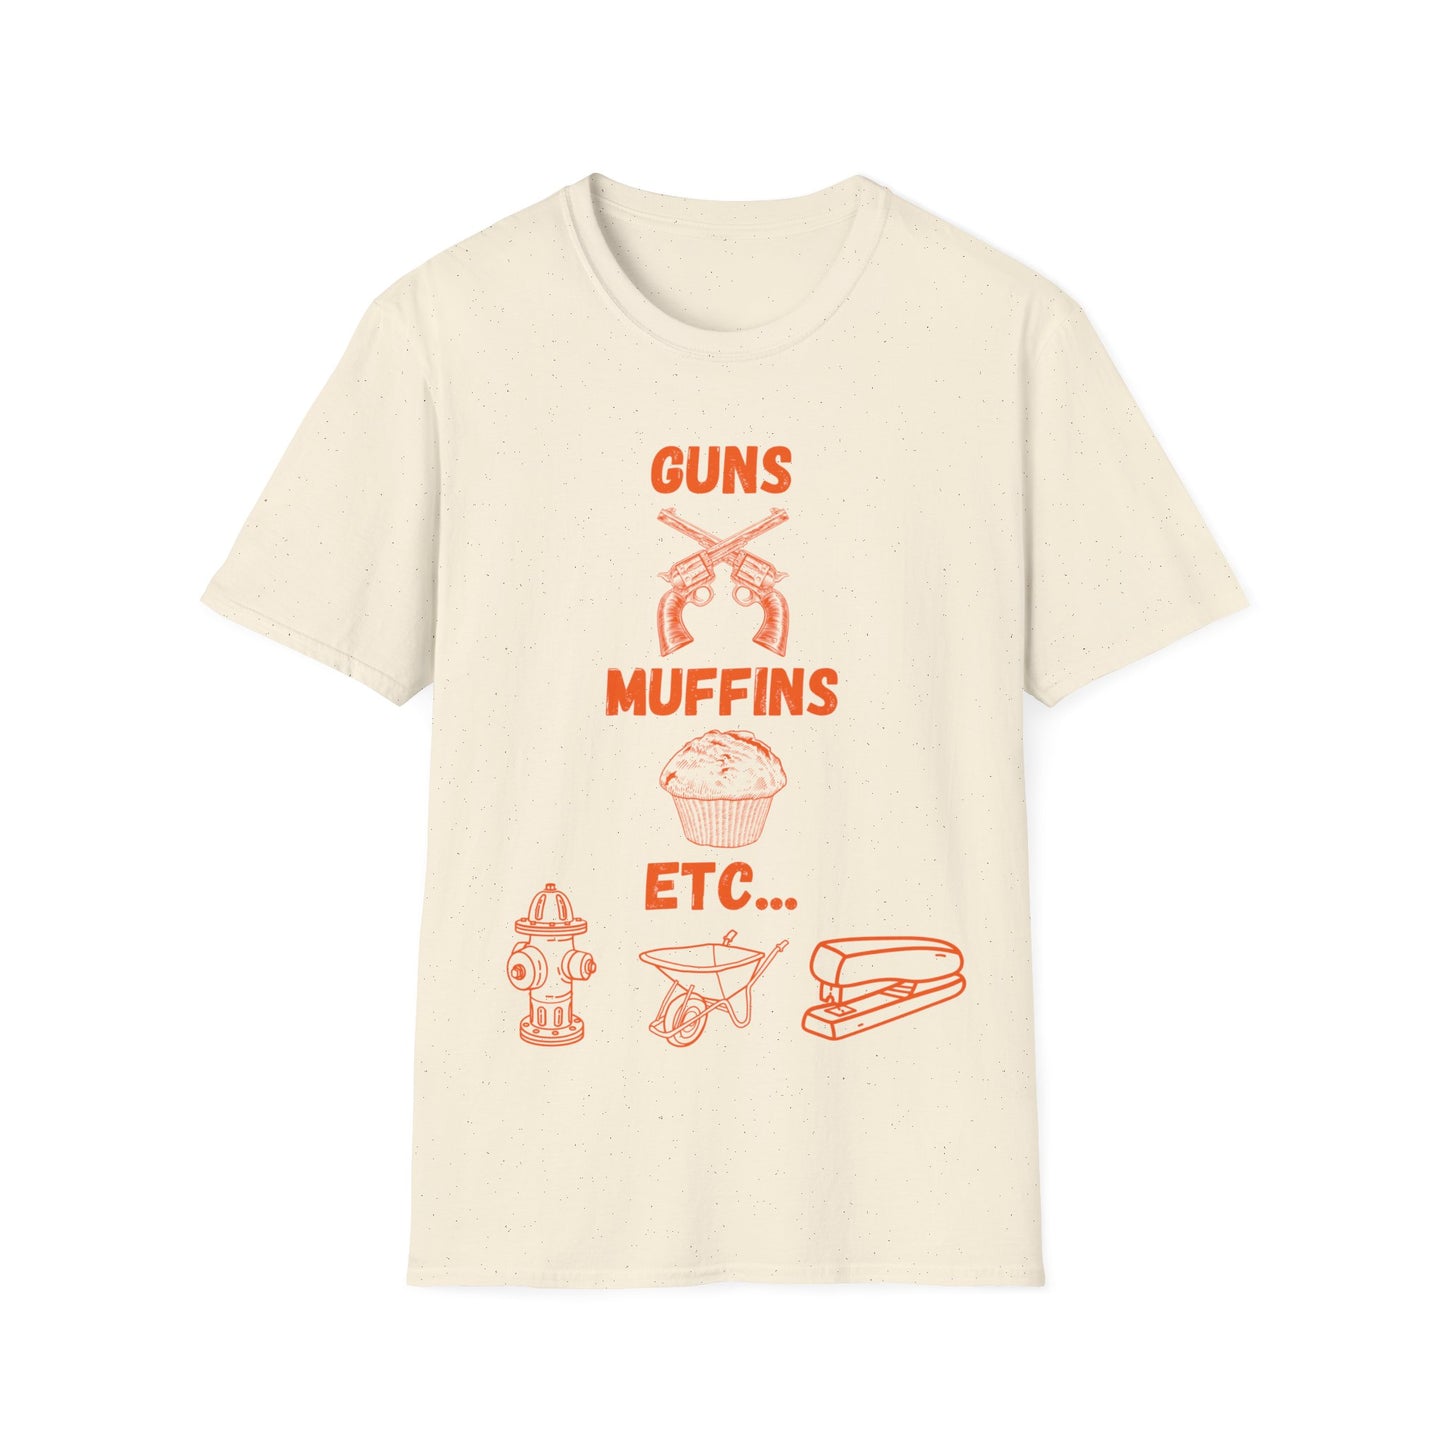 "Guns, Muffins, Etc." Shirt